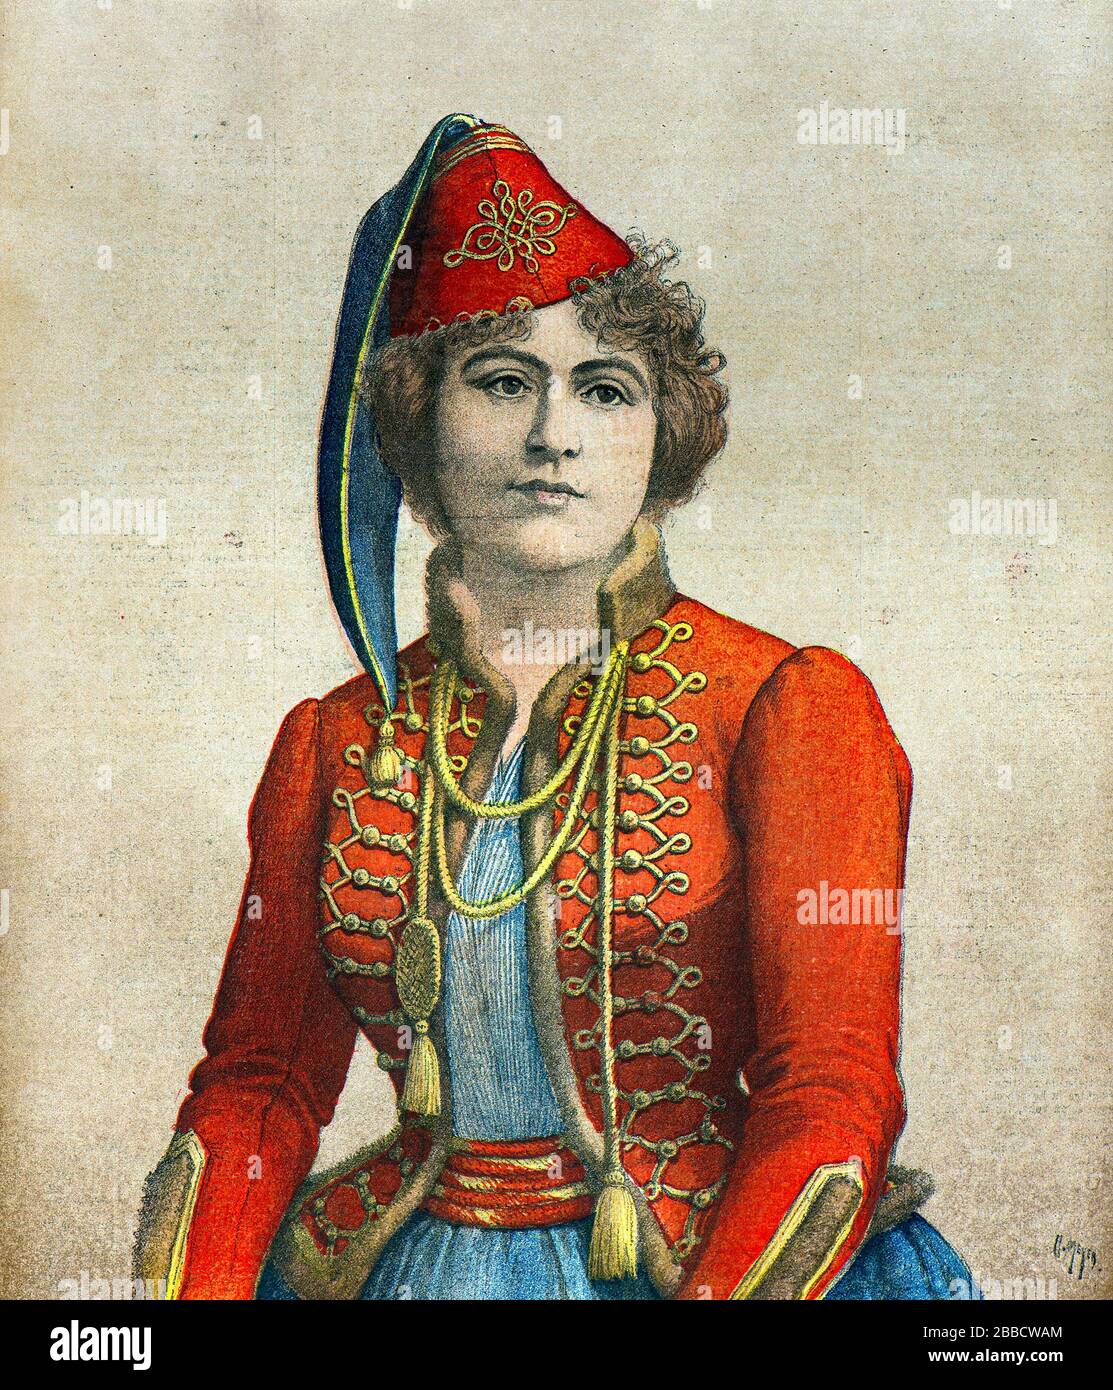 Meyer Henri ( 1841 - 1899 ) - Portrait de l'actrice Marie Delna (1875 - 1932) dans le rôle de Marion dans le jeu la Vivandiere à l'opéra comique en 1895 - Collection privée Banque D'Images